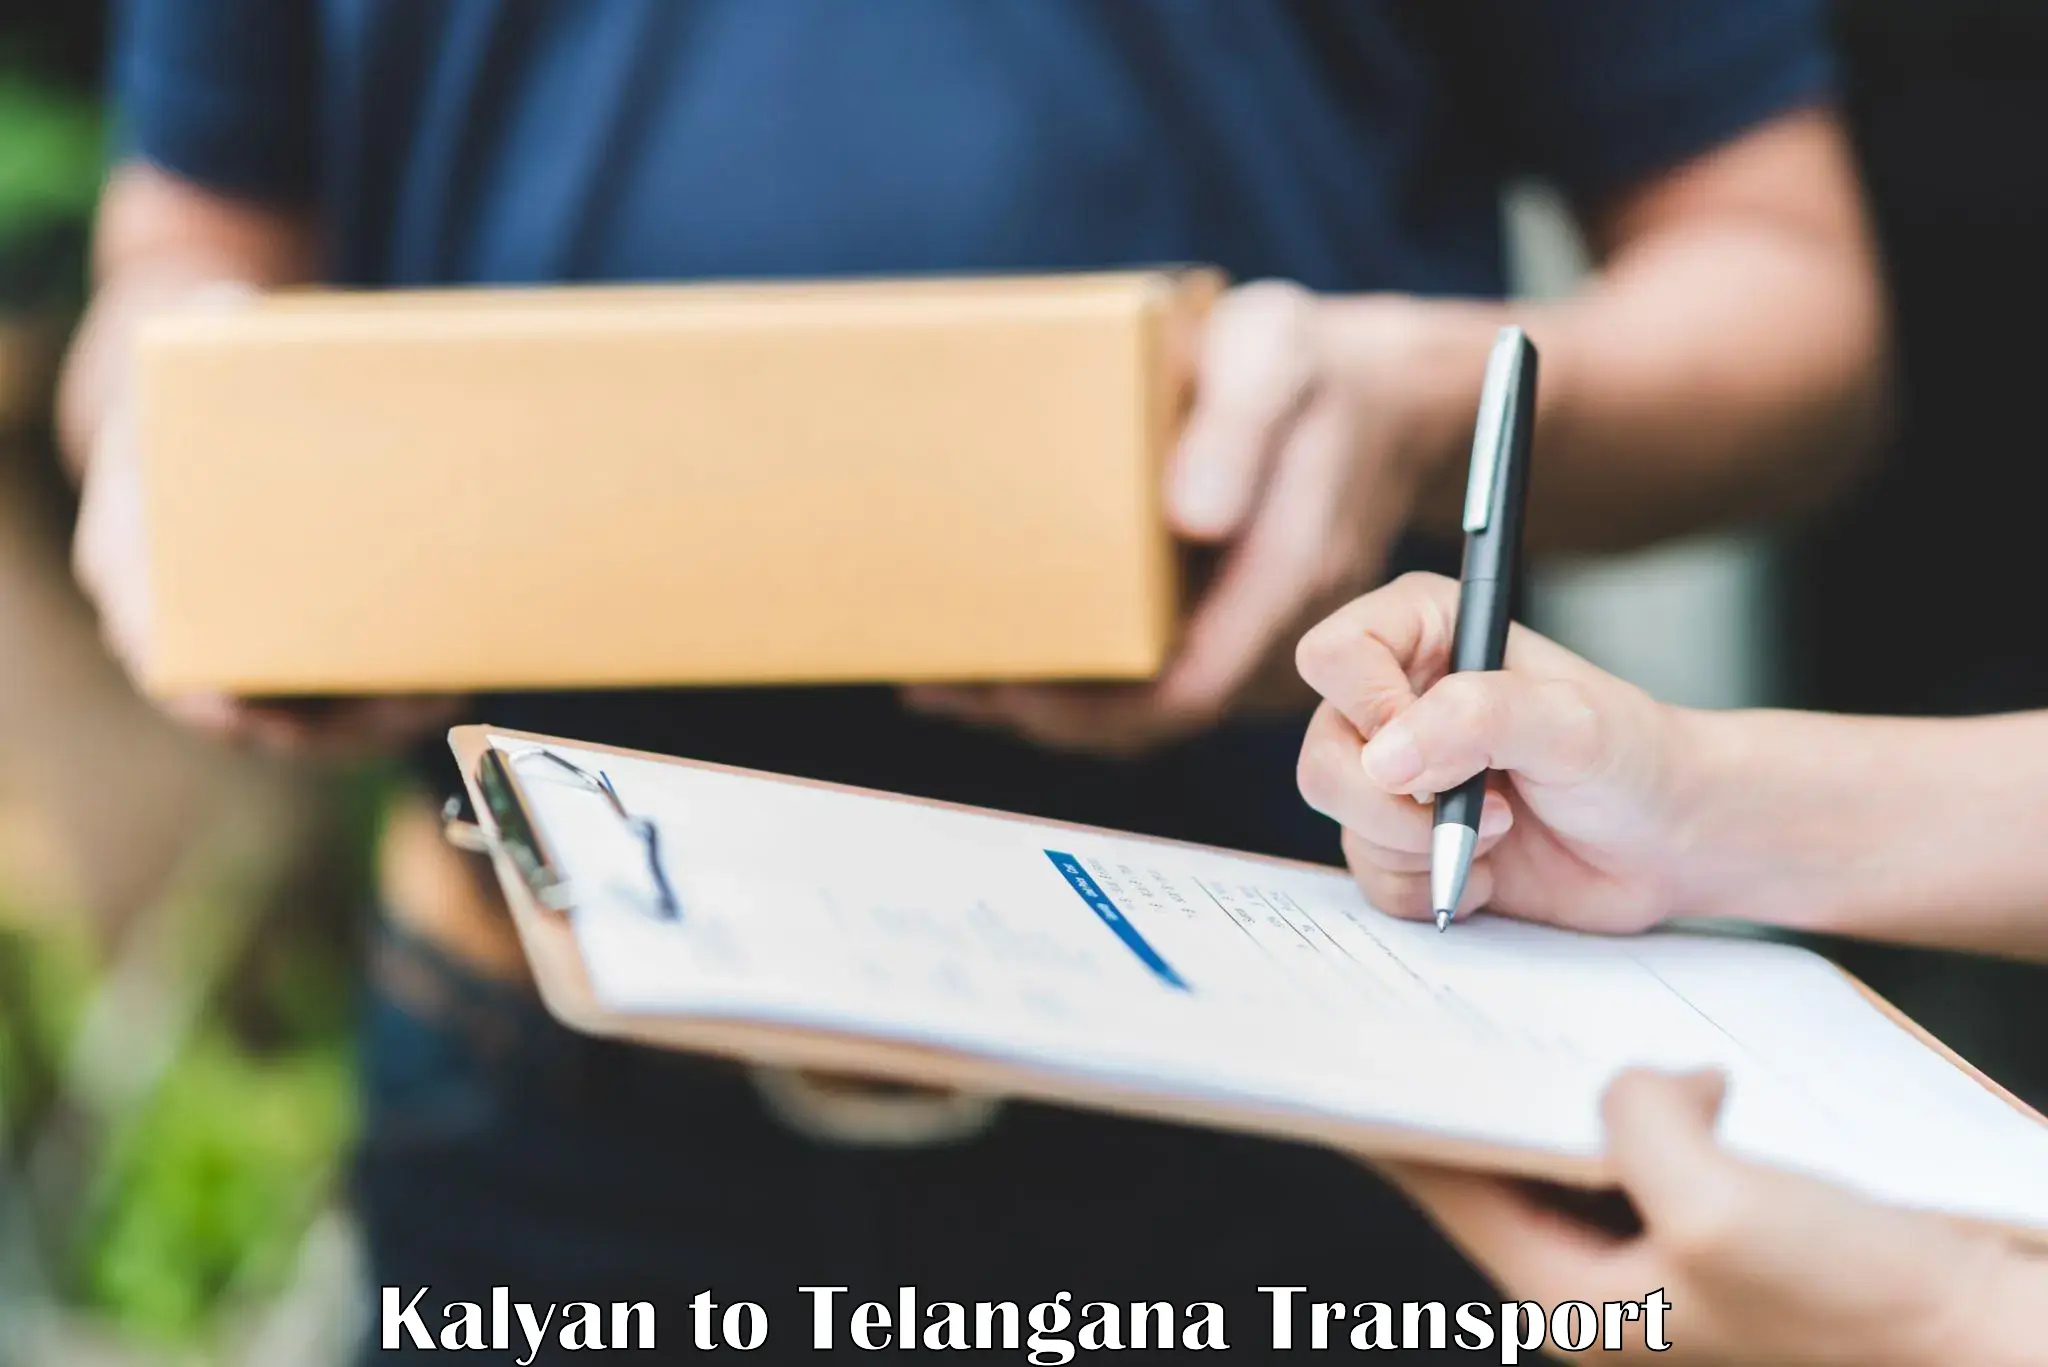 India truck logistics services Kalyan to Telangana